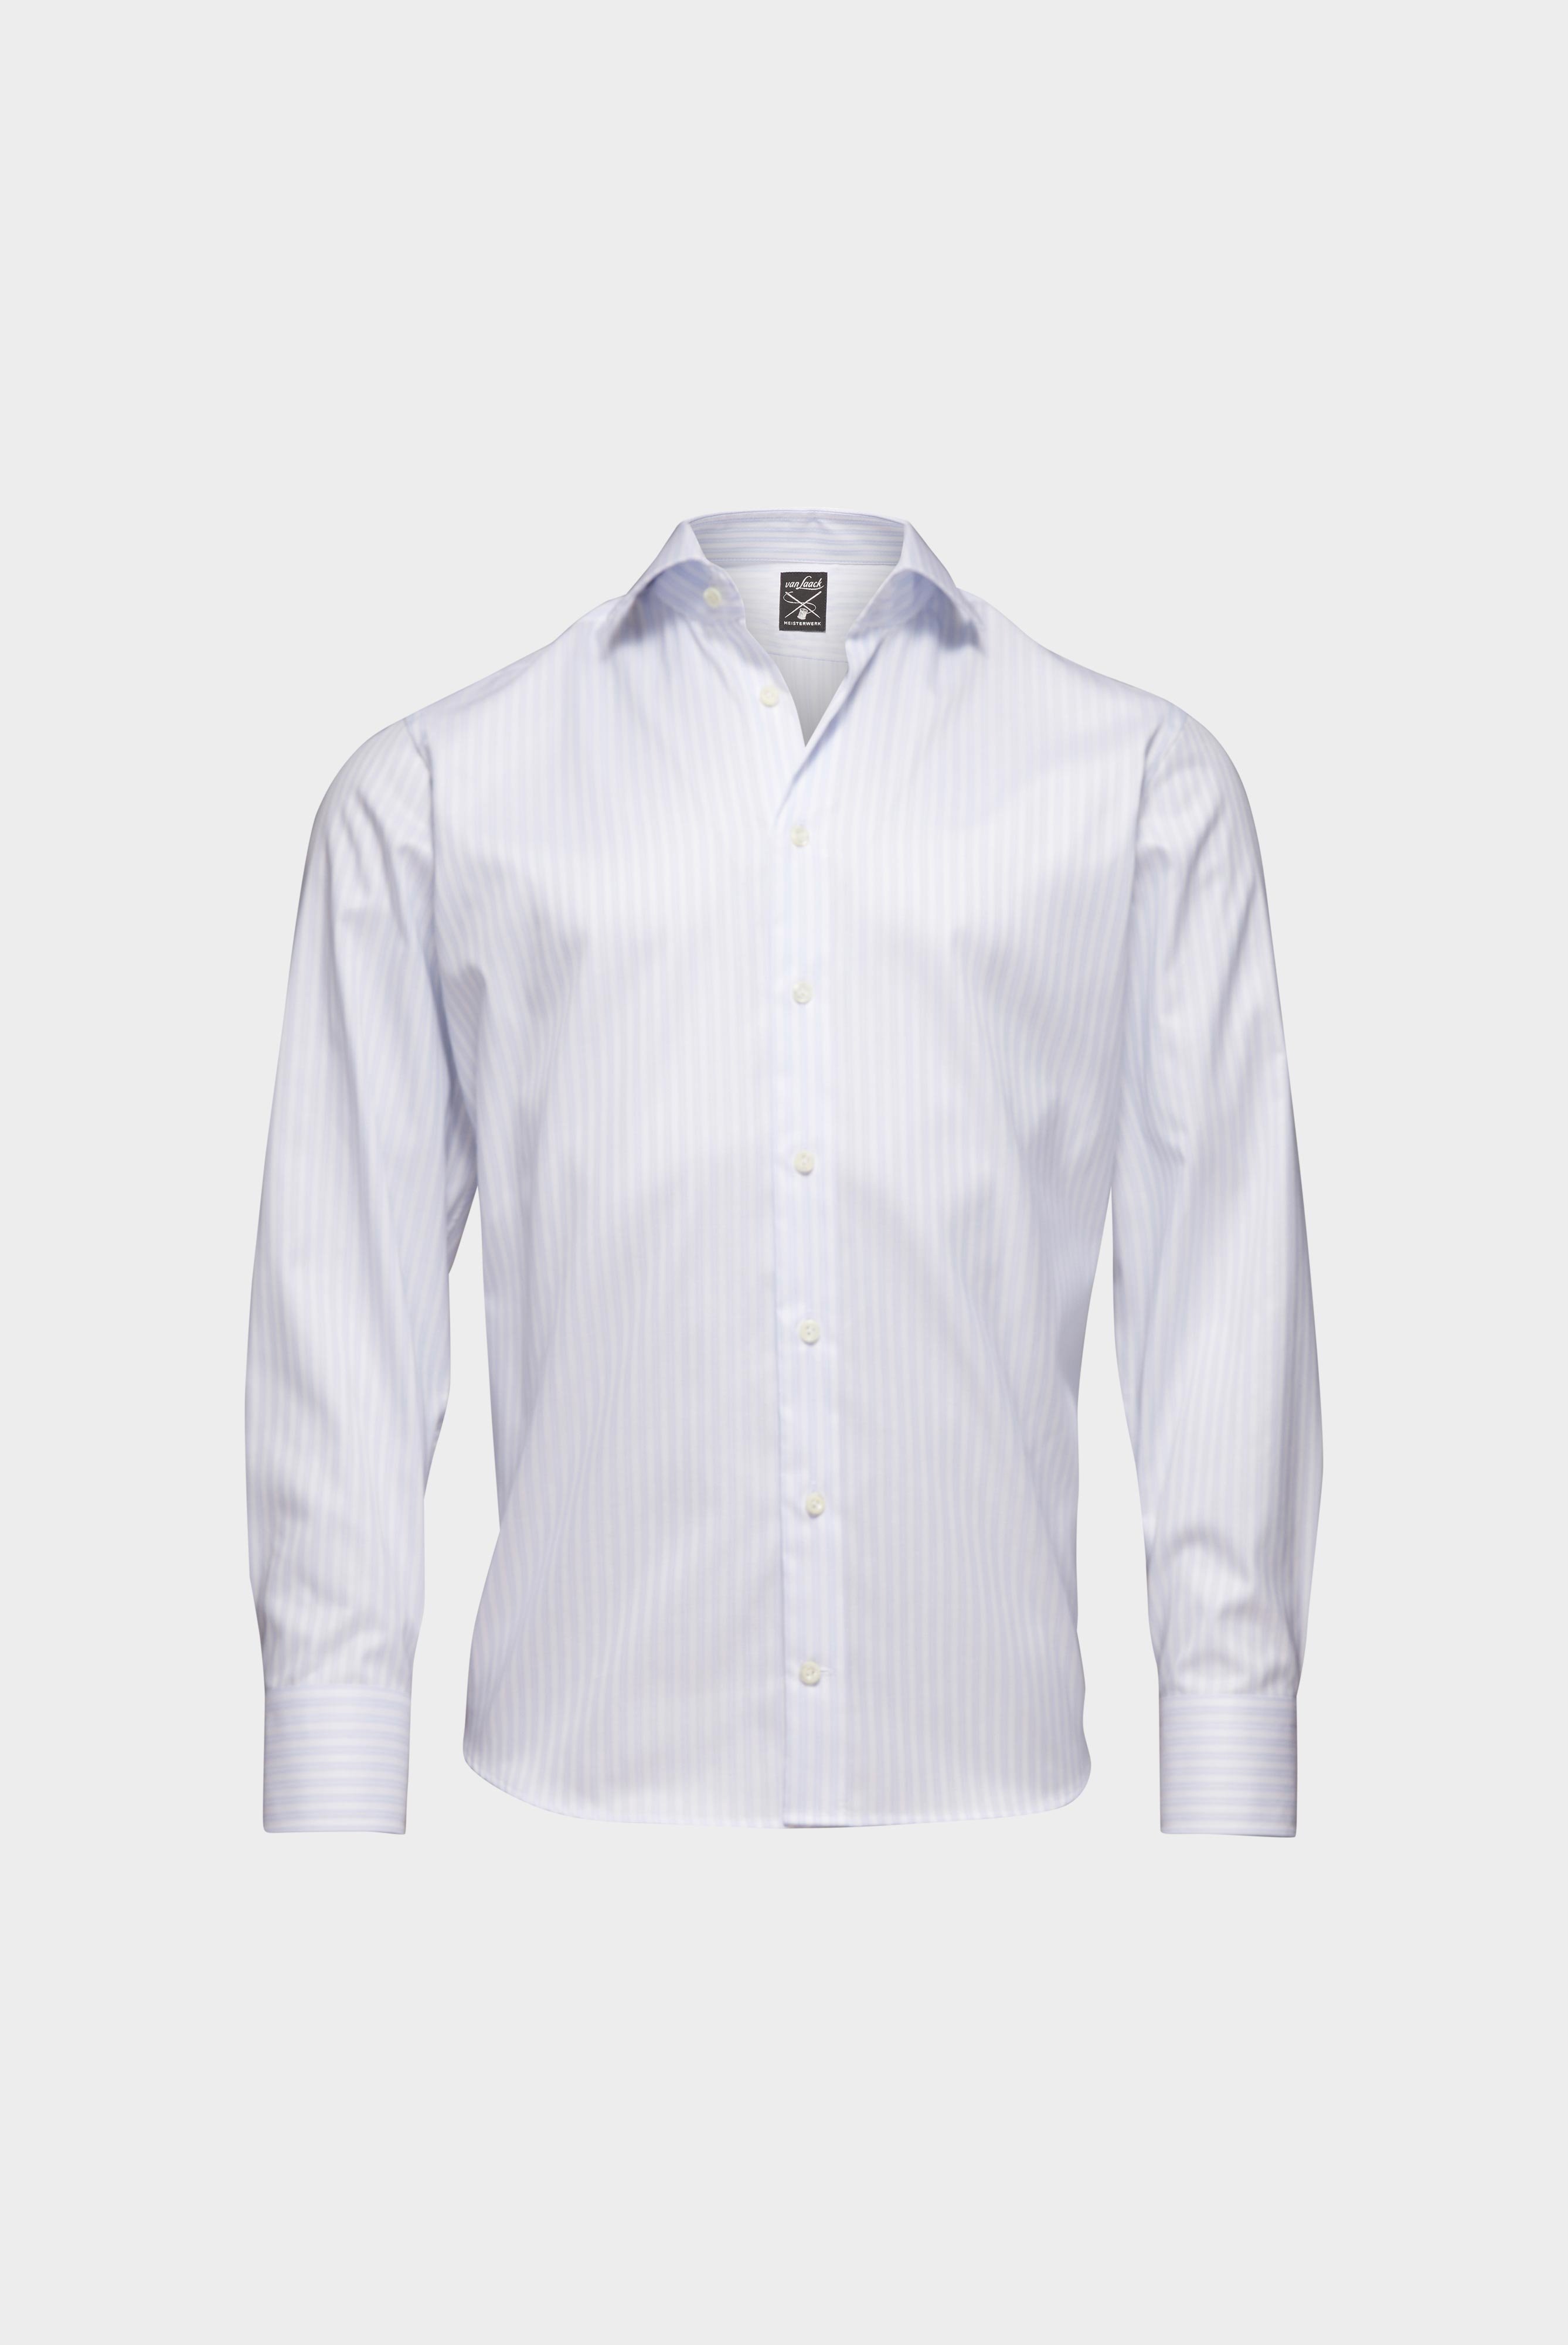 Bügelleichte Hemden+Bügelfreies Hemd mit Streifen Slim Fit+20.2019.BQ.161106.007.38